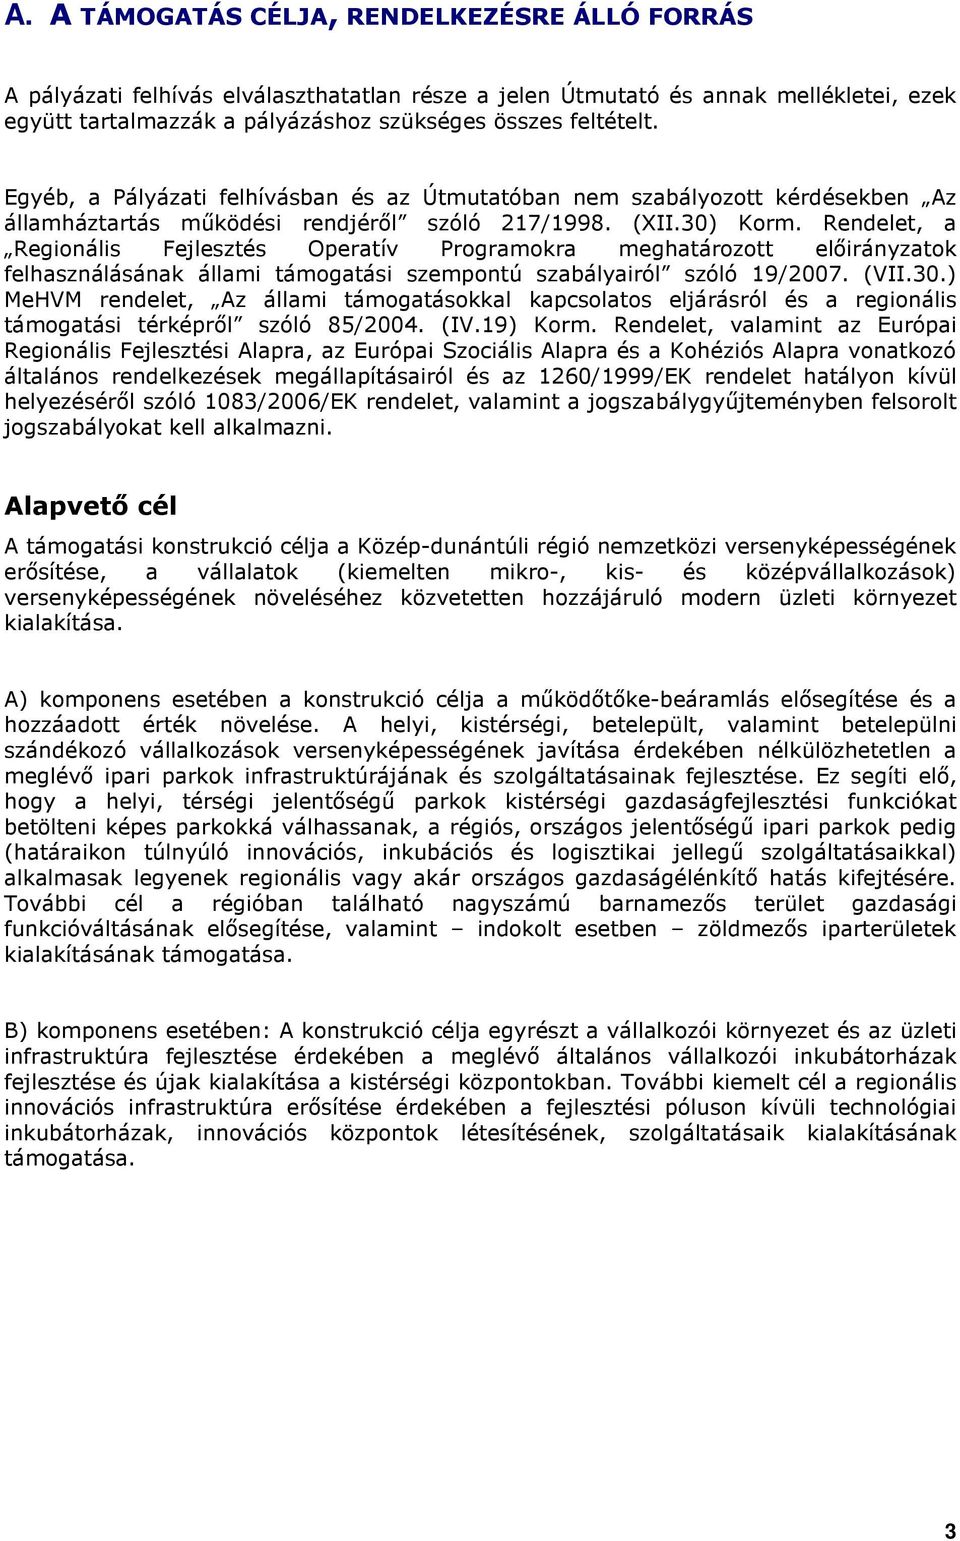 Rendelet, a Reginális Fejlesztés Operatív Prgramkra meghatárztt elıirányzatk felhasználásának állami támgatási szempntú szabályairól szóló 19/2007. (VII.30.